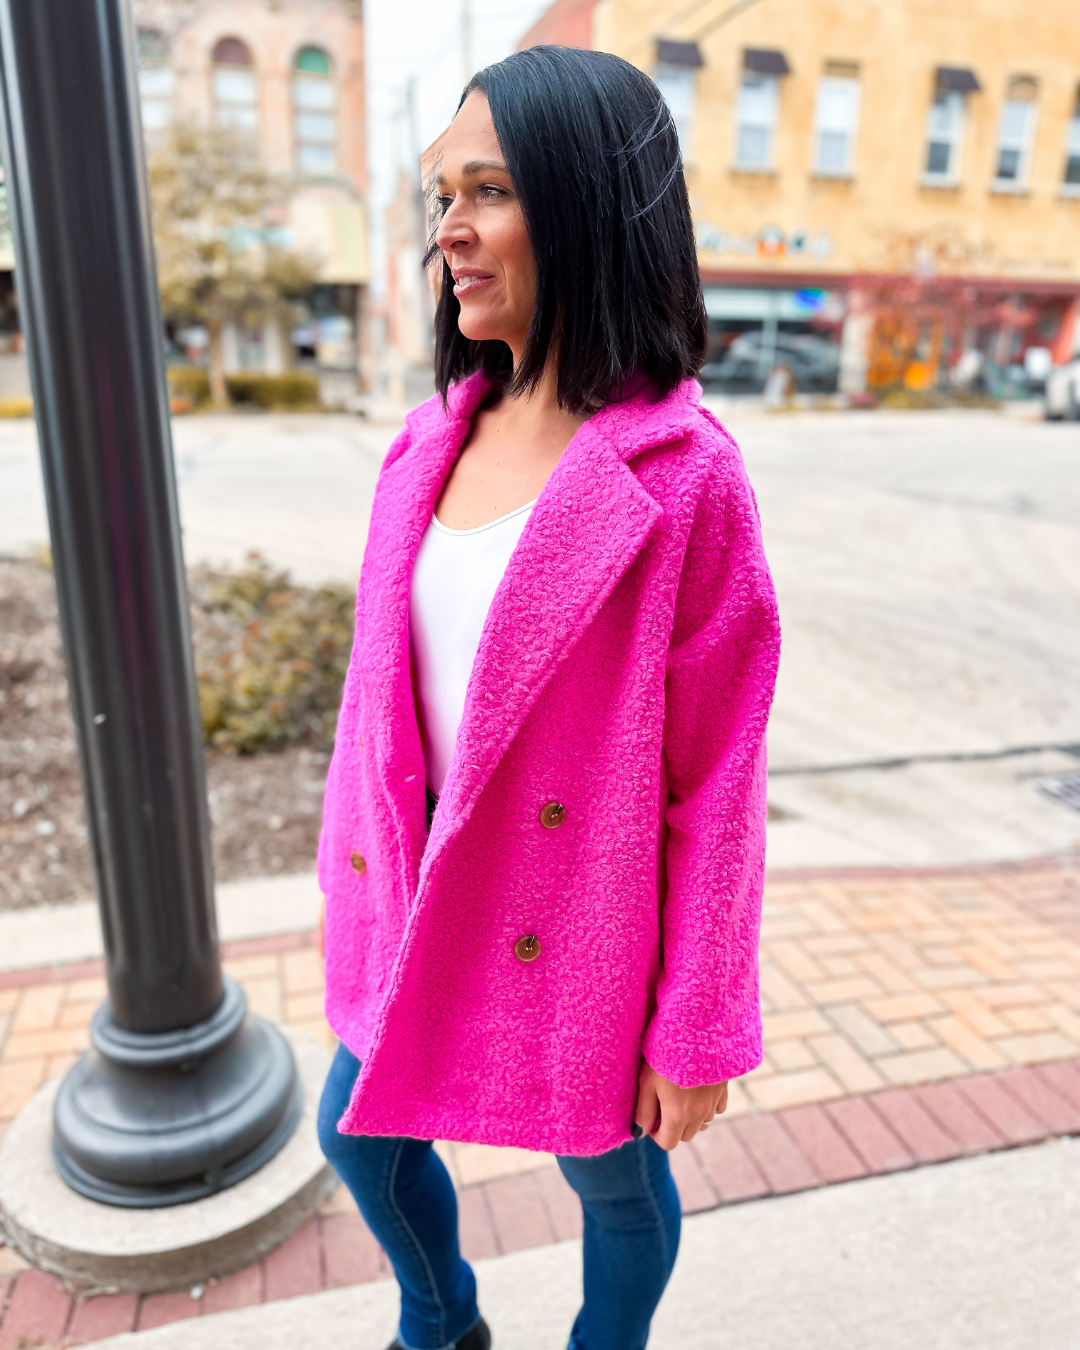 The Alexandria Fleece Teddy Pea Coat in Hot Pink